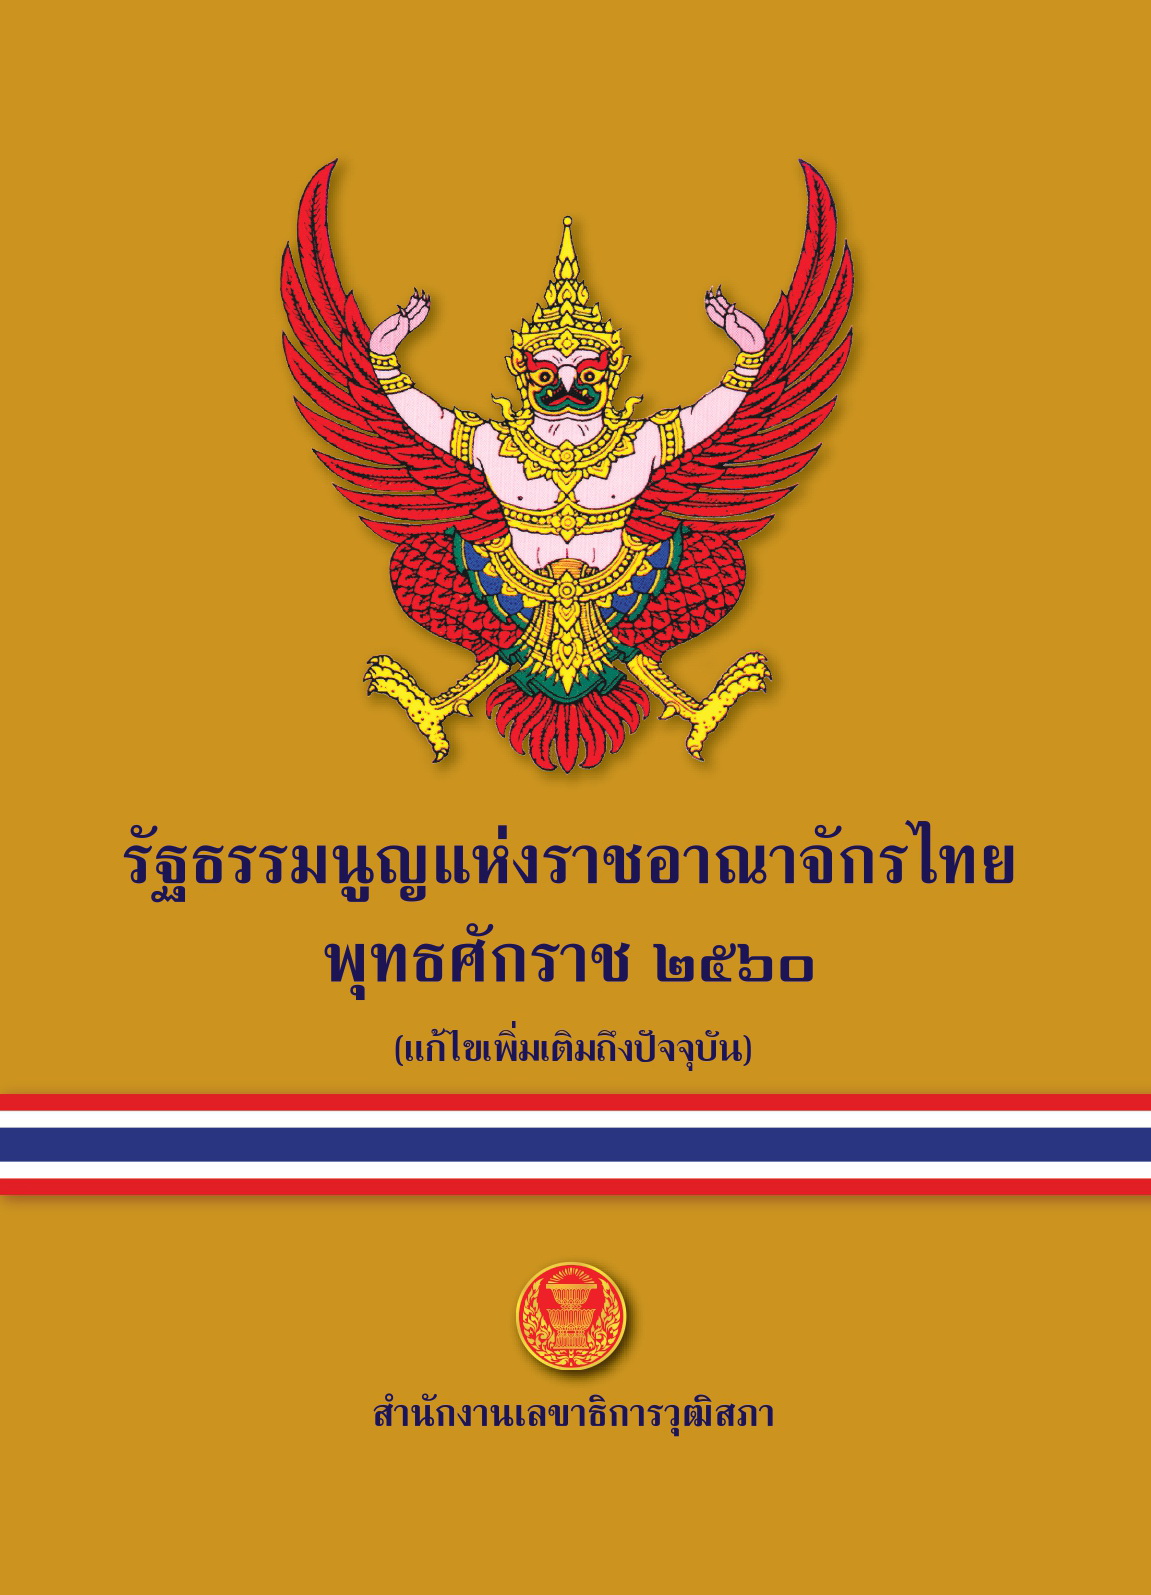 รัฐธรรมนูญแห่งราชอาณาจักรไทย พุทธศักราช 2560 (แก้ไขเพิ่มเติมถึงปัจจุบัน)